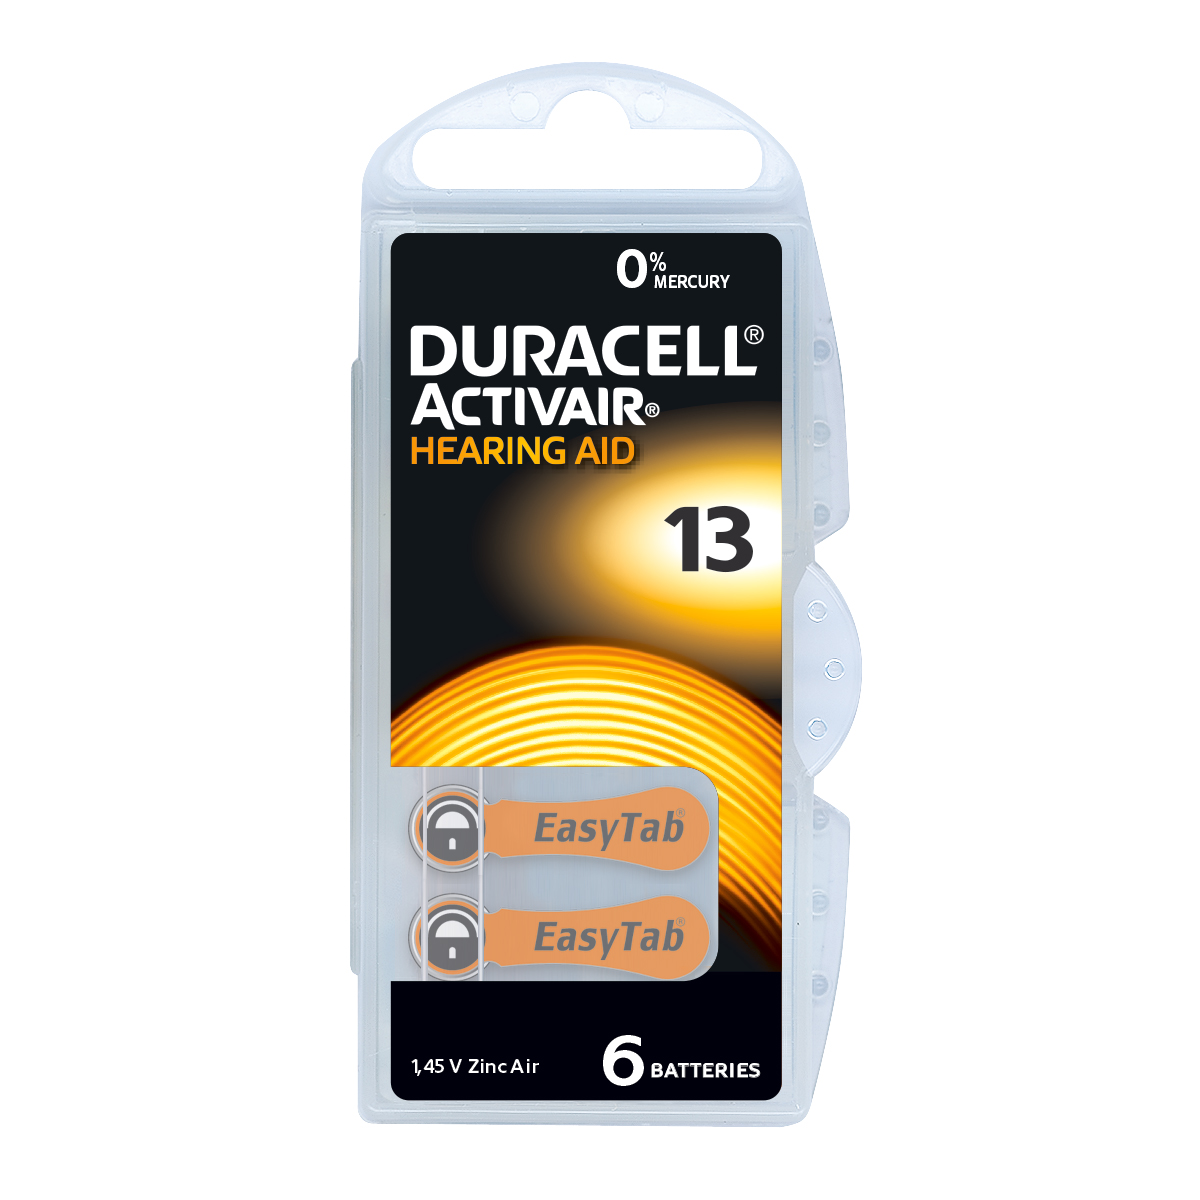 Duracell Activair Pack 6 Piles auditives Zinc Air No. 13, en blister